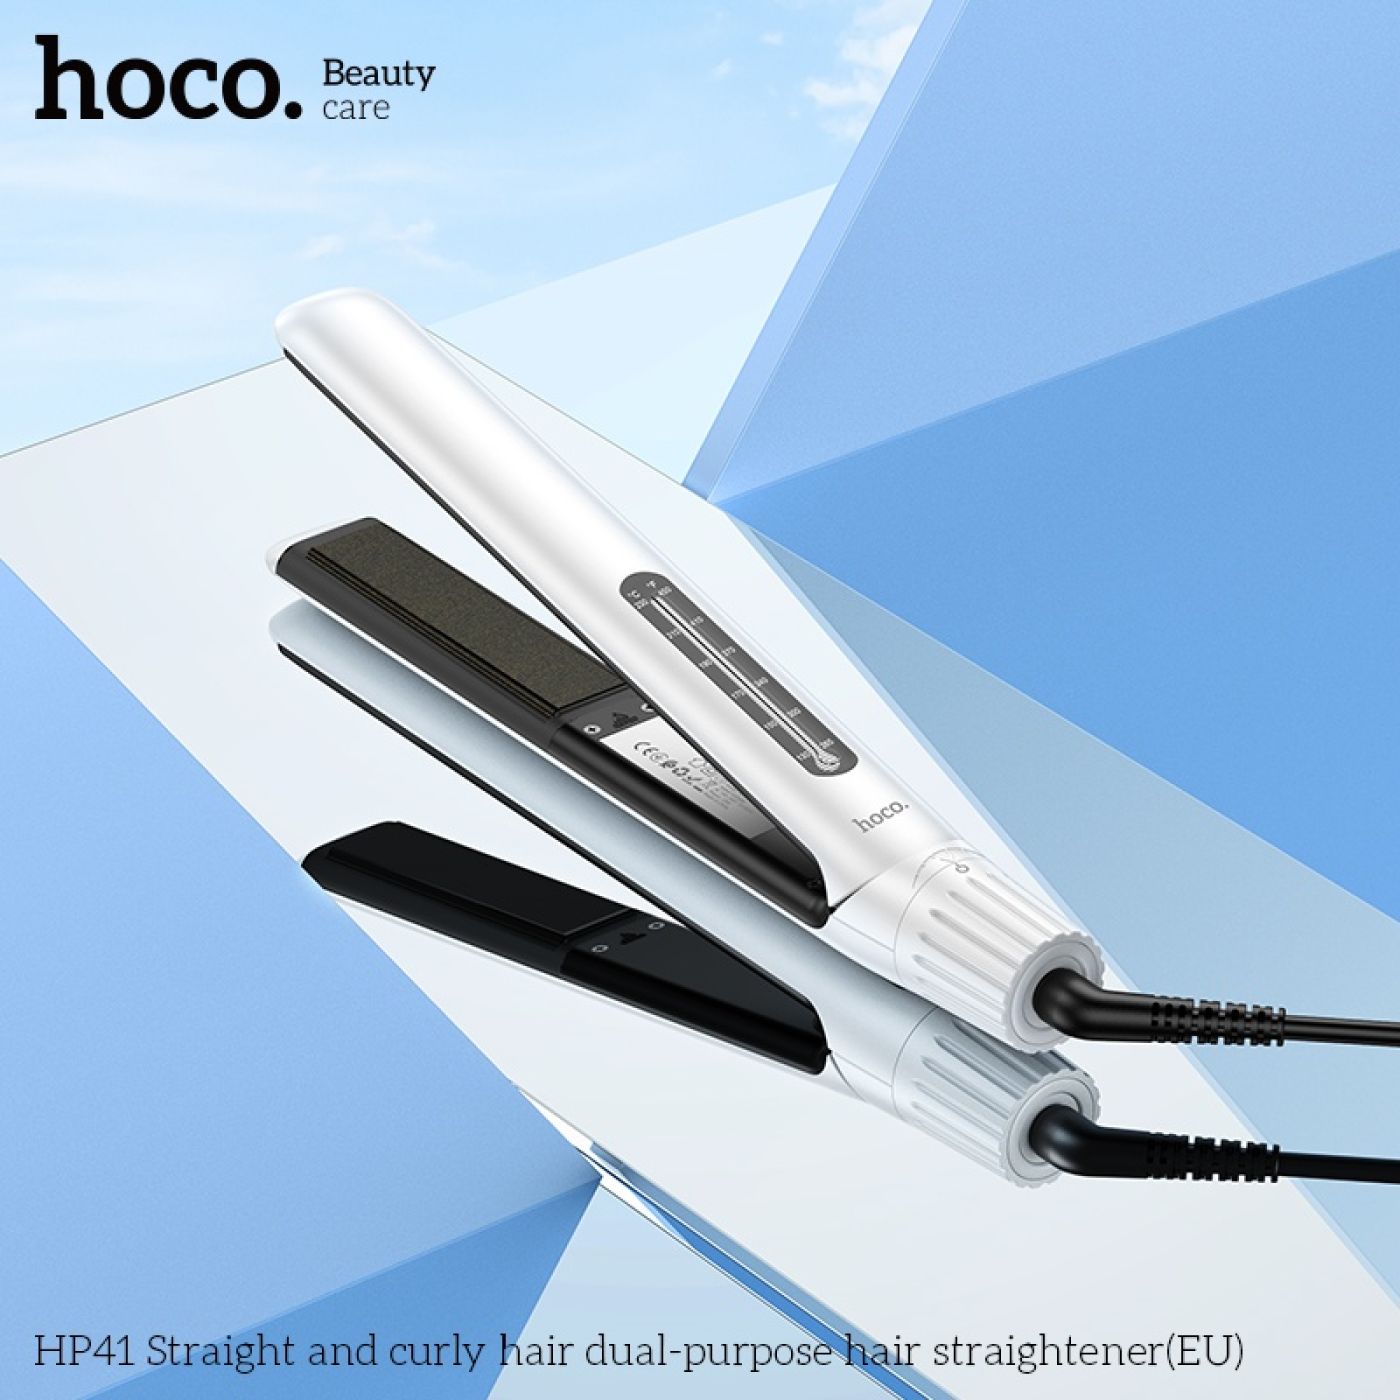 Máy duỗi tóc và làm xoăn tóc 2 trong 1 Hoco HP41